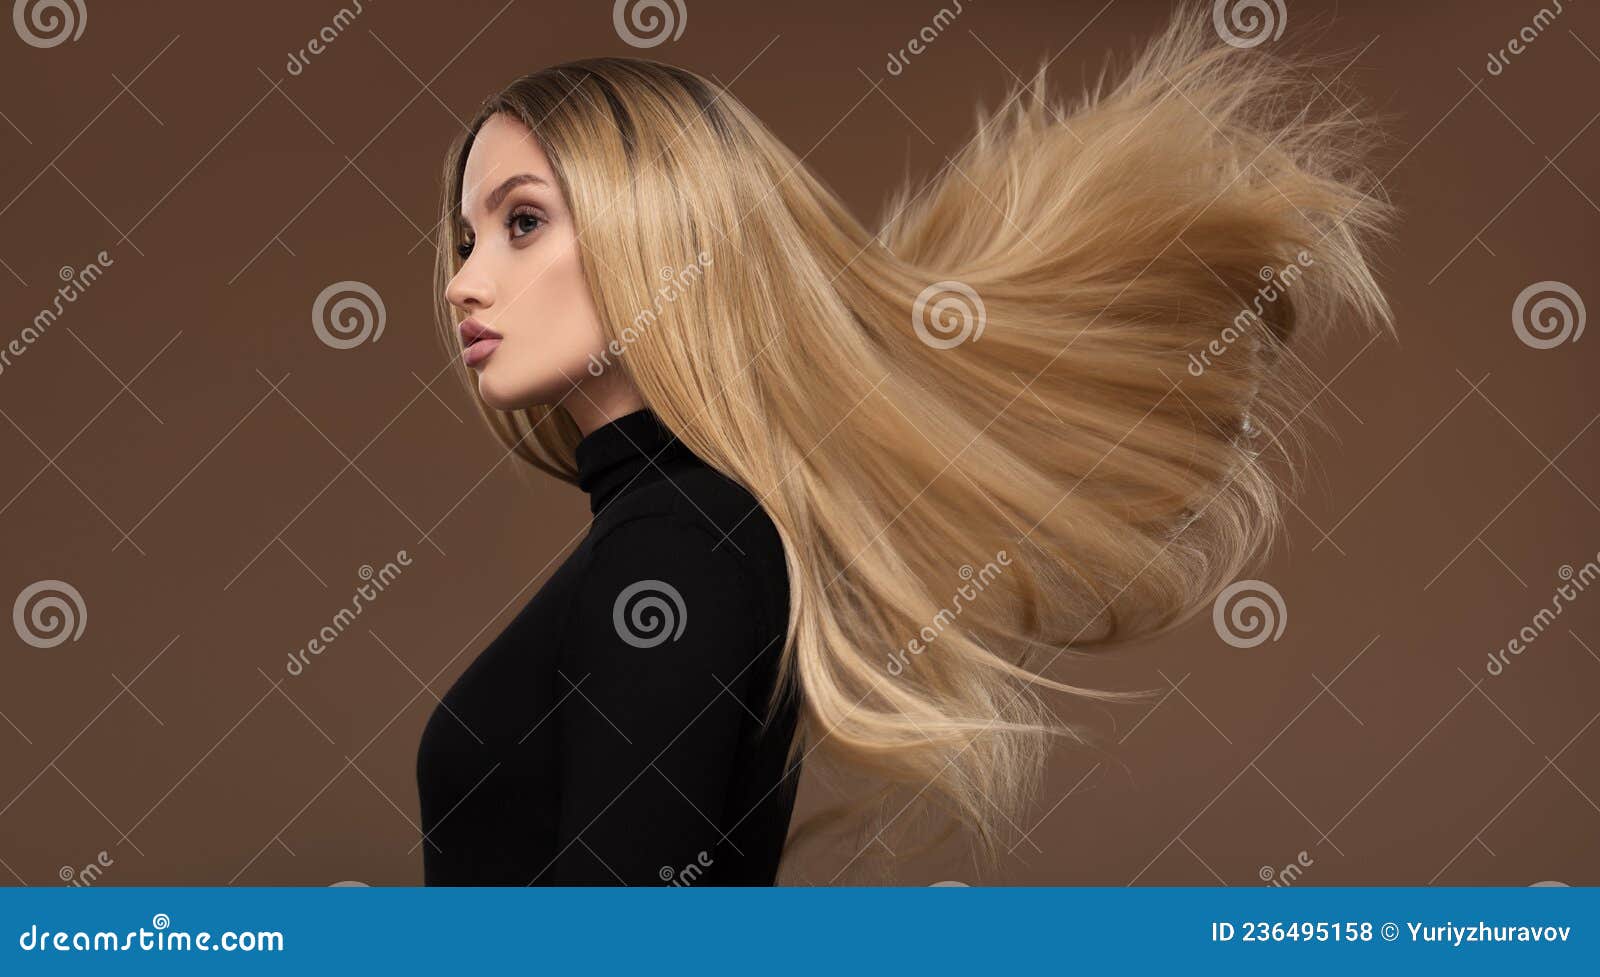 Flowing Hair Logo - wide 8